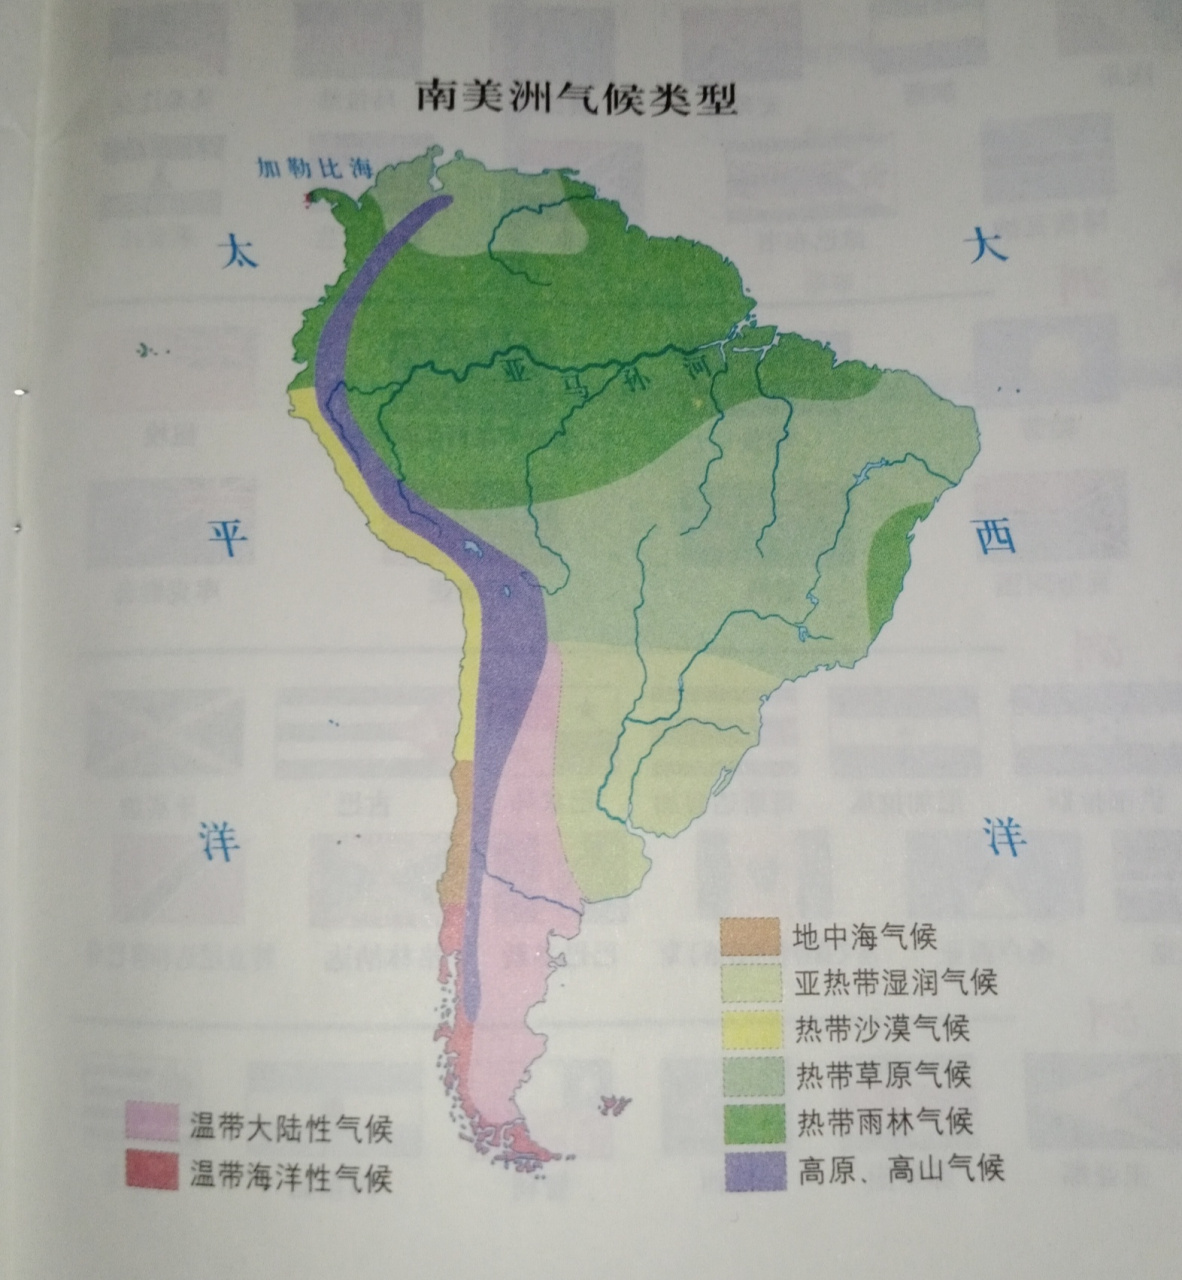 南美洲的气候特征图片